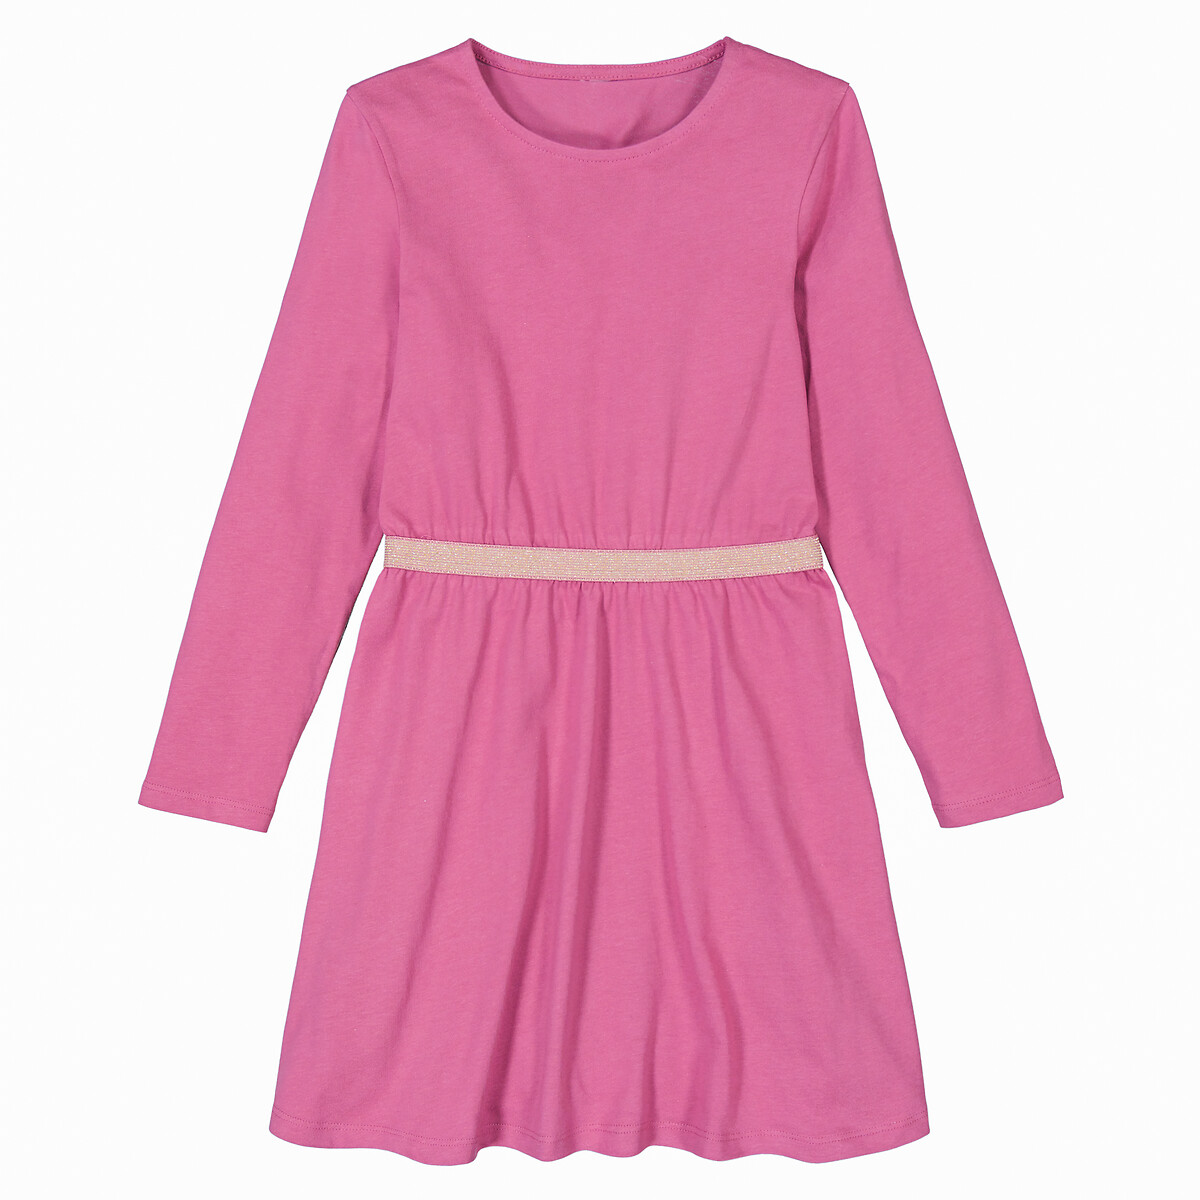 Платье С круглым вырезом и длинными рукавами 5 лет - 108 см розовый LaRedoute, размер 5 лет - 108 см - фото 3